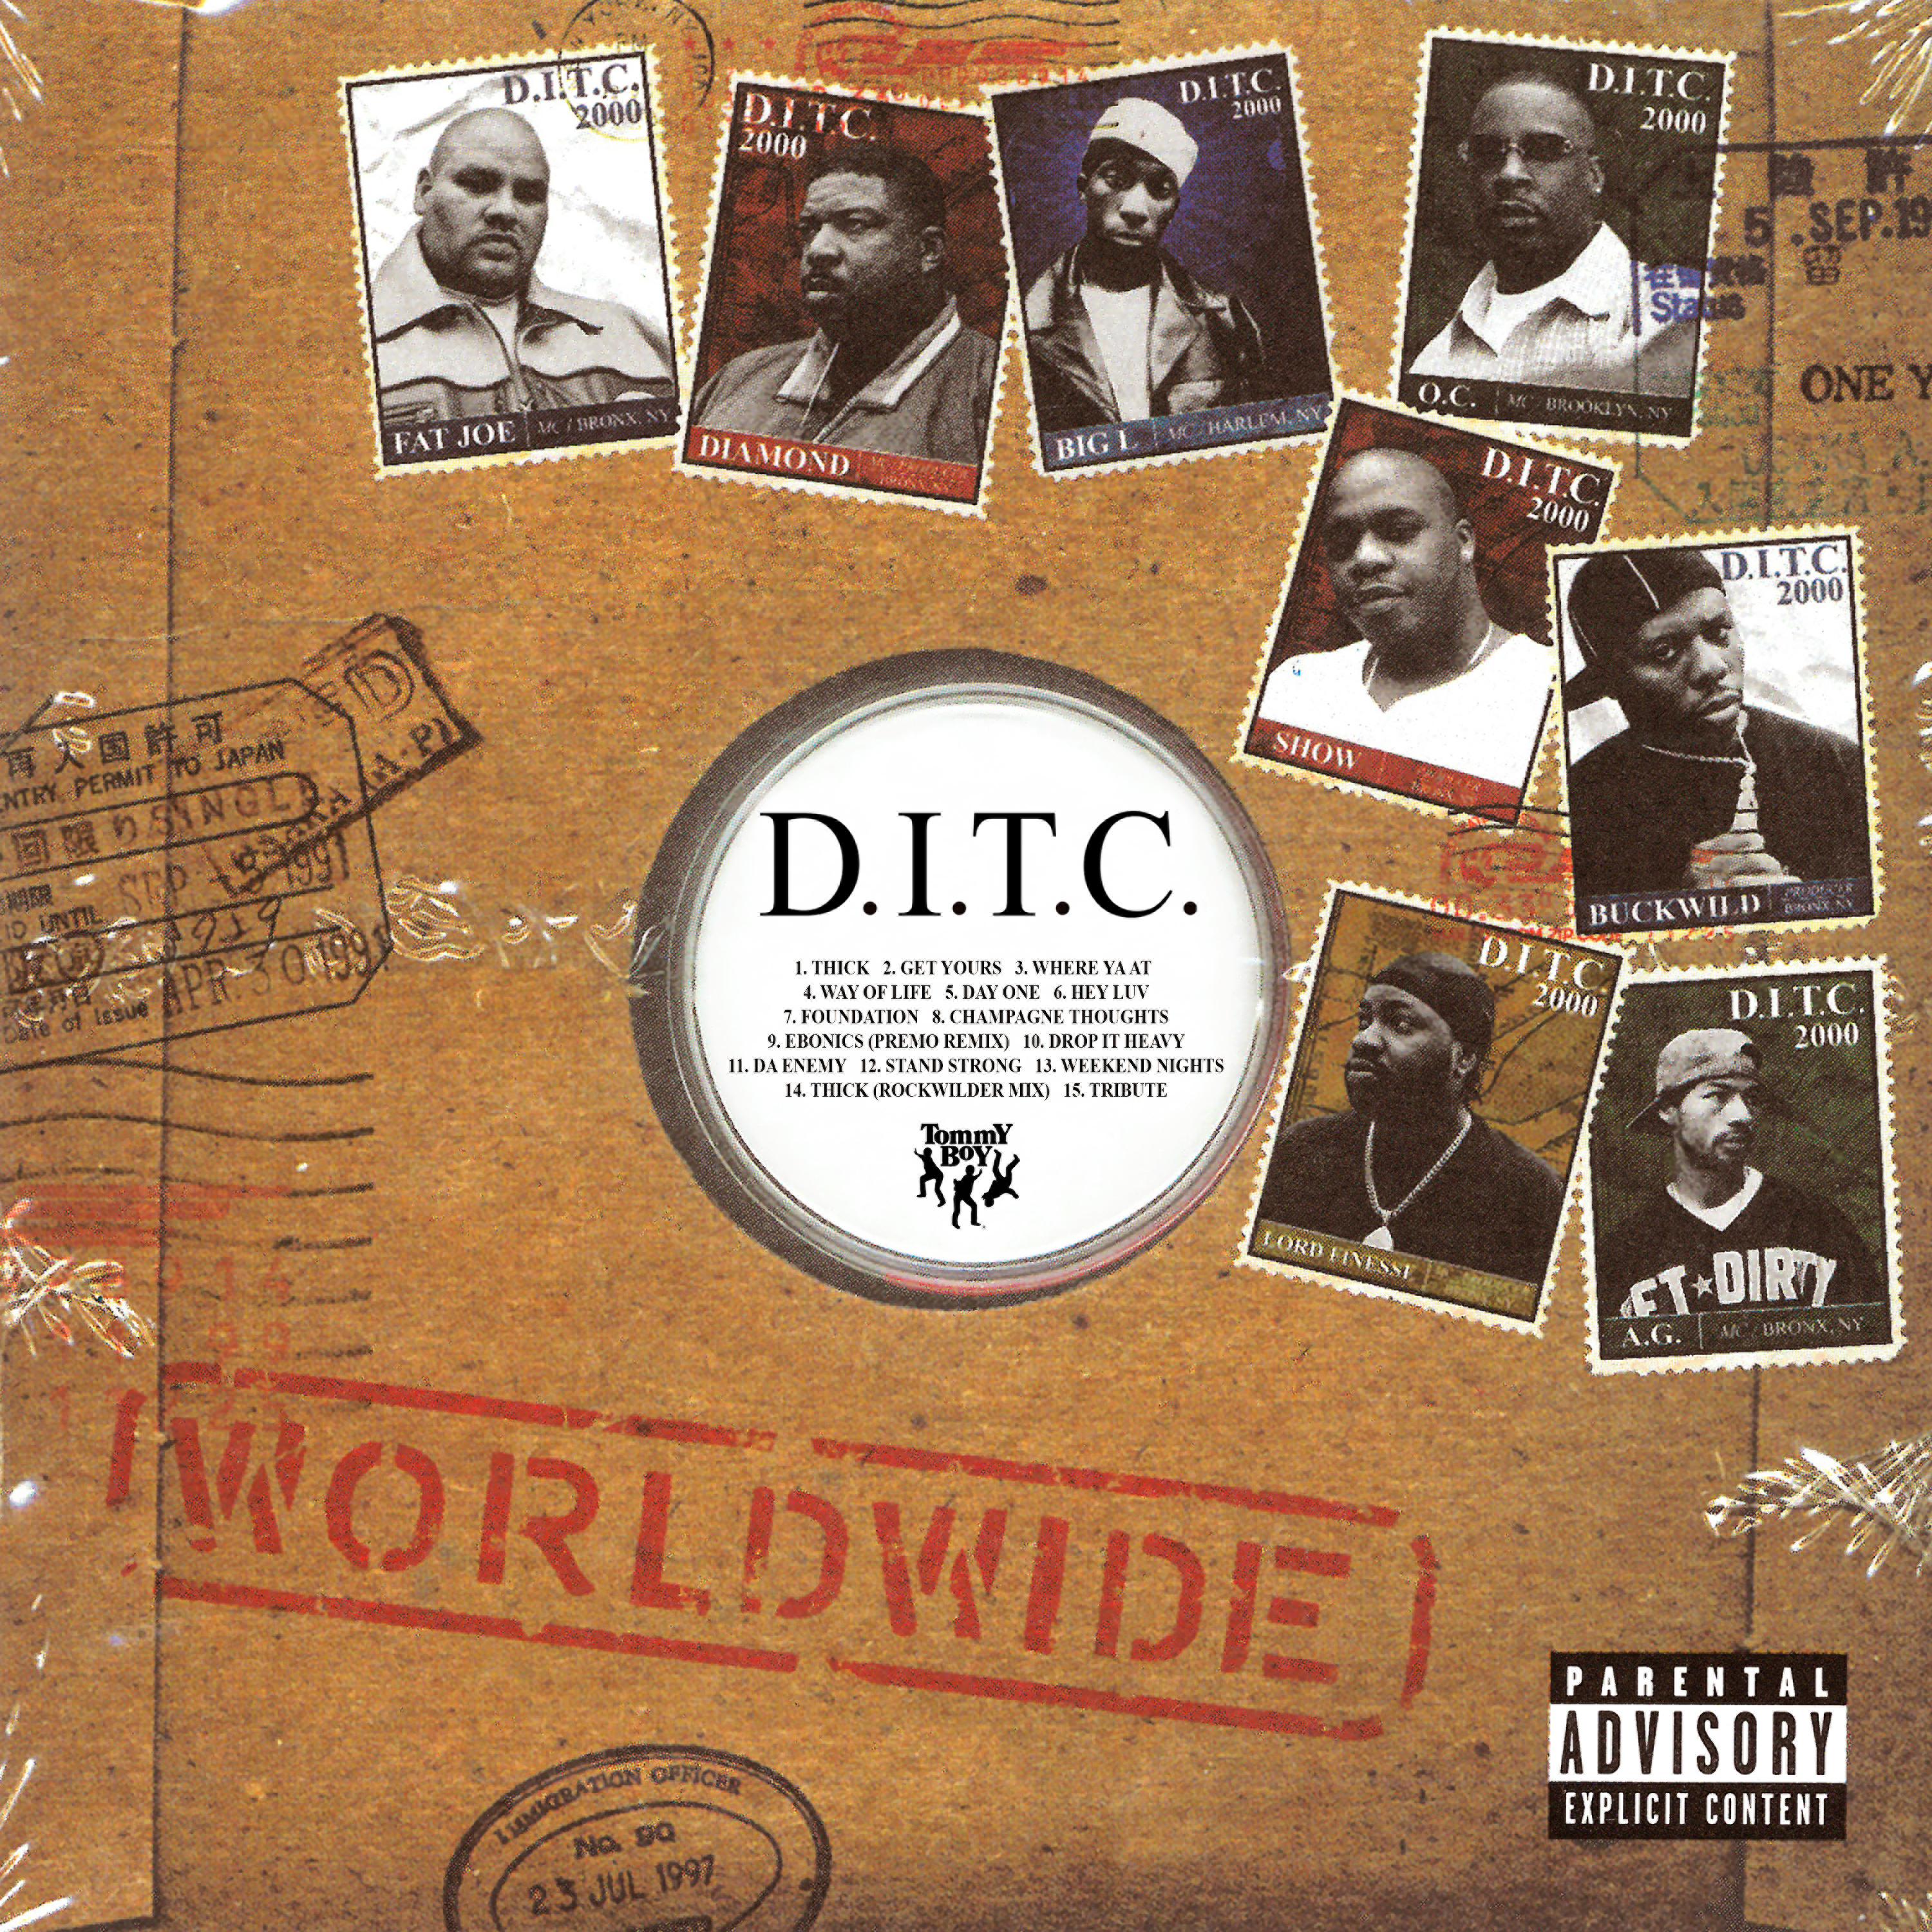 Way of Life歌词 歌手D.I.T.C. / Big L / Fat Joe-专辑D.I.T.C.-单曲《Way of Life》LRC歌词下载